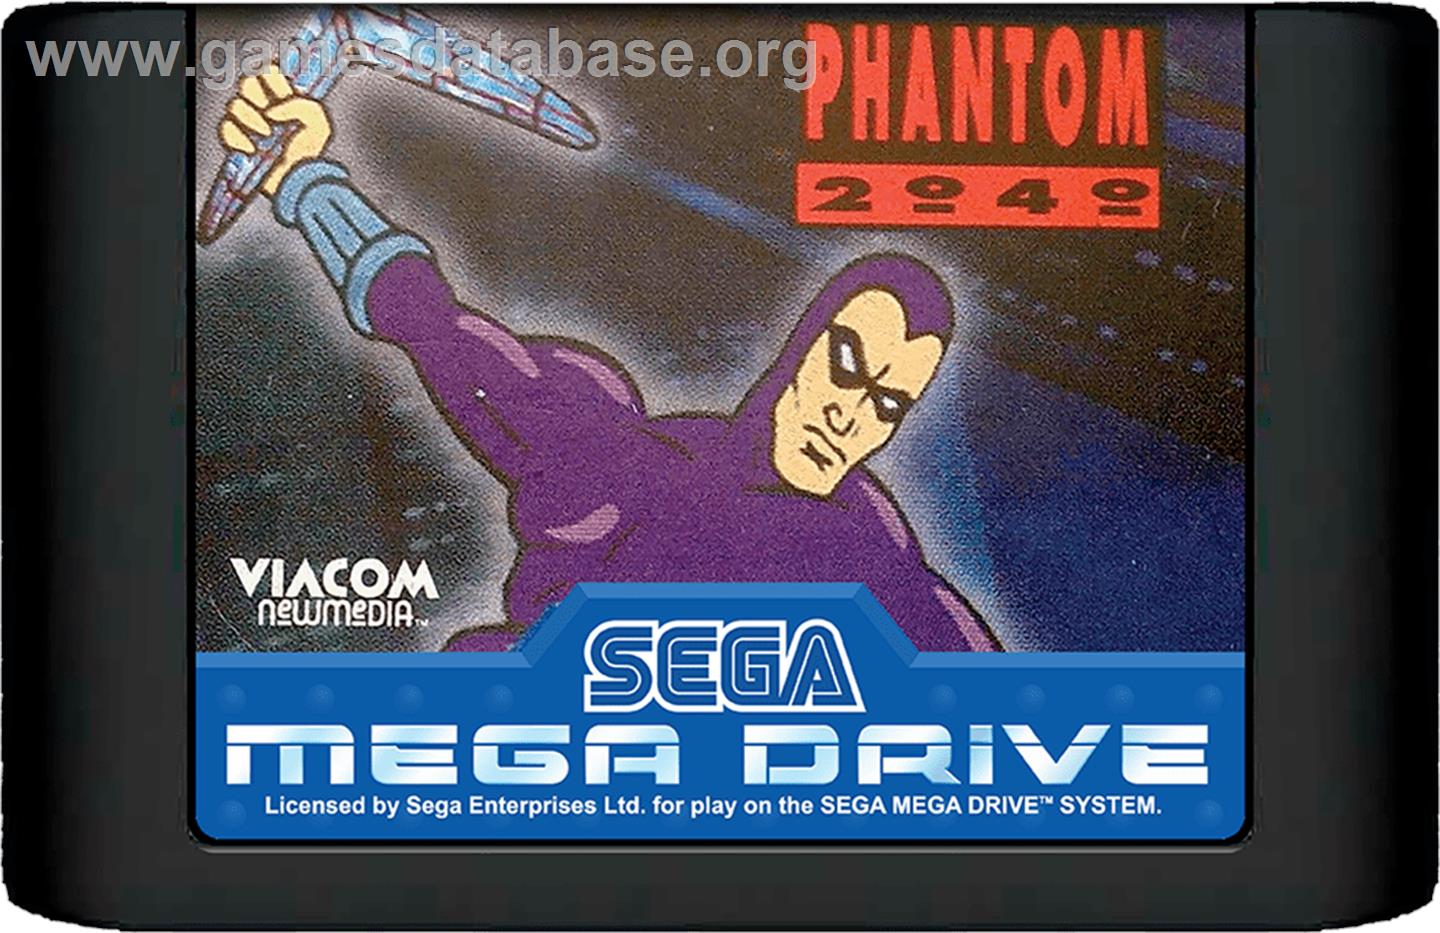 Phantom 2040 - Sega Genesis - Artwork - Cartridge